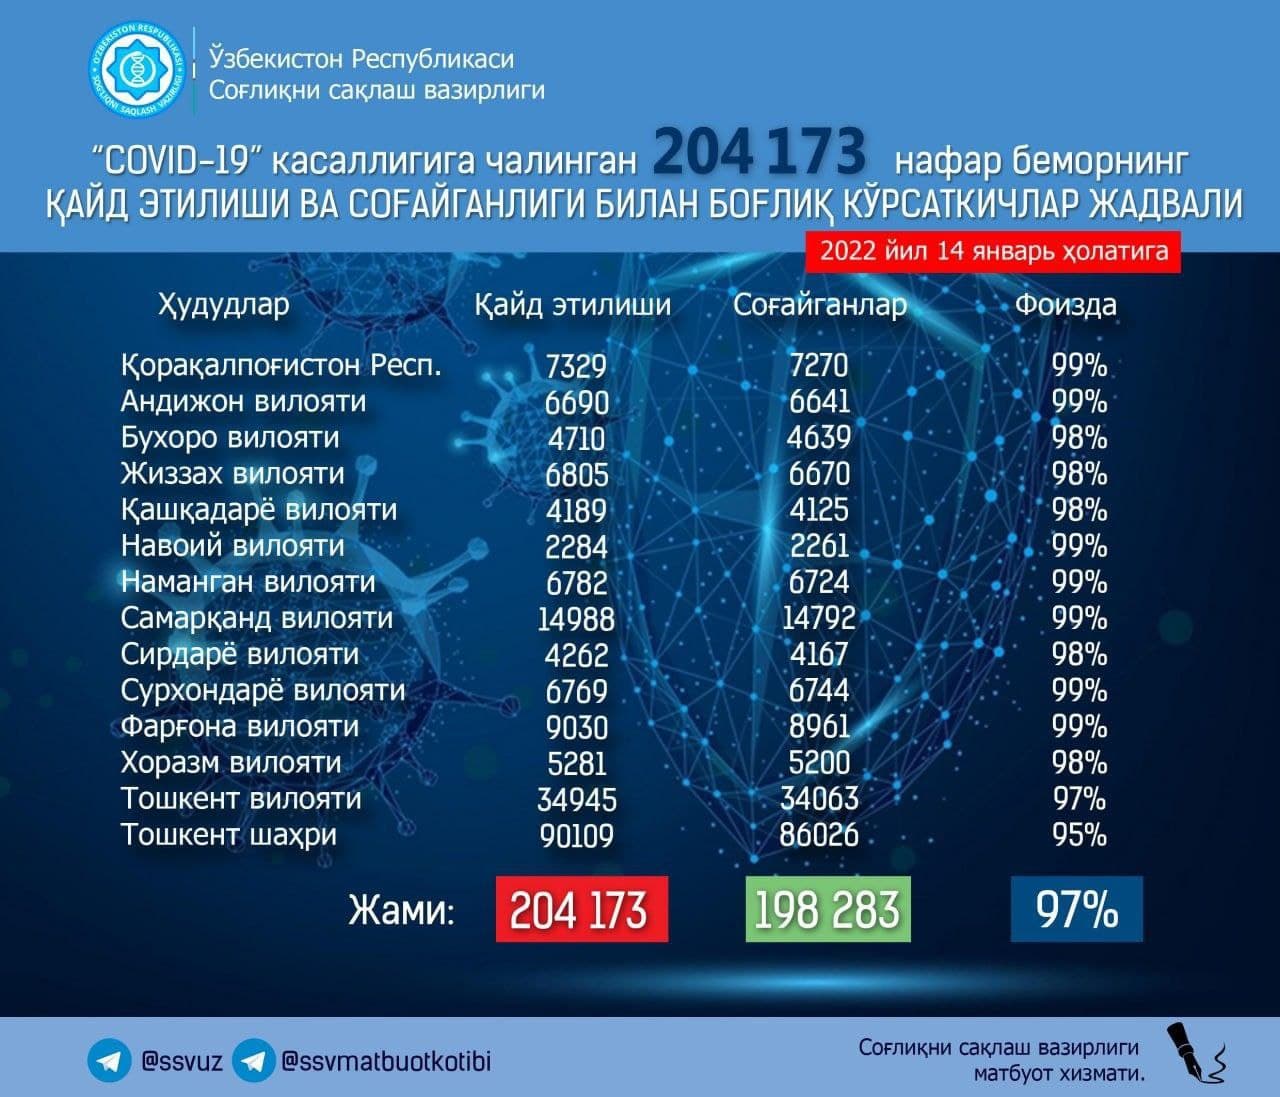 Узбекистанцы продолжают заражаться: за сутки коронавирус подхватили почти 900 человек